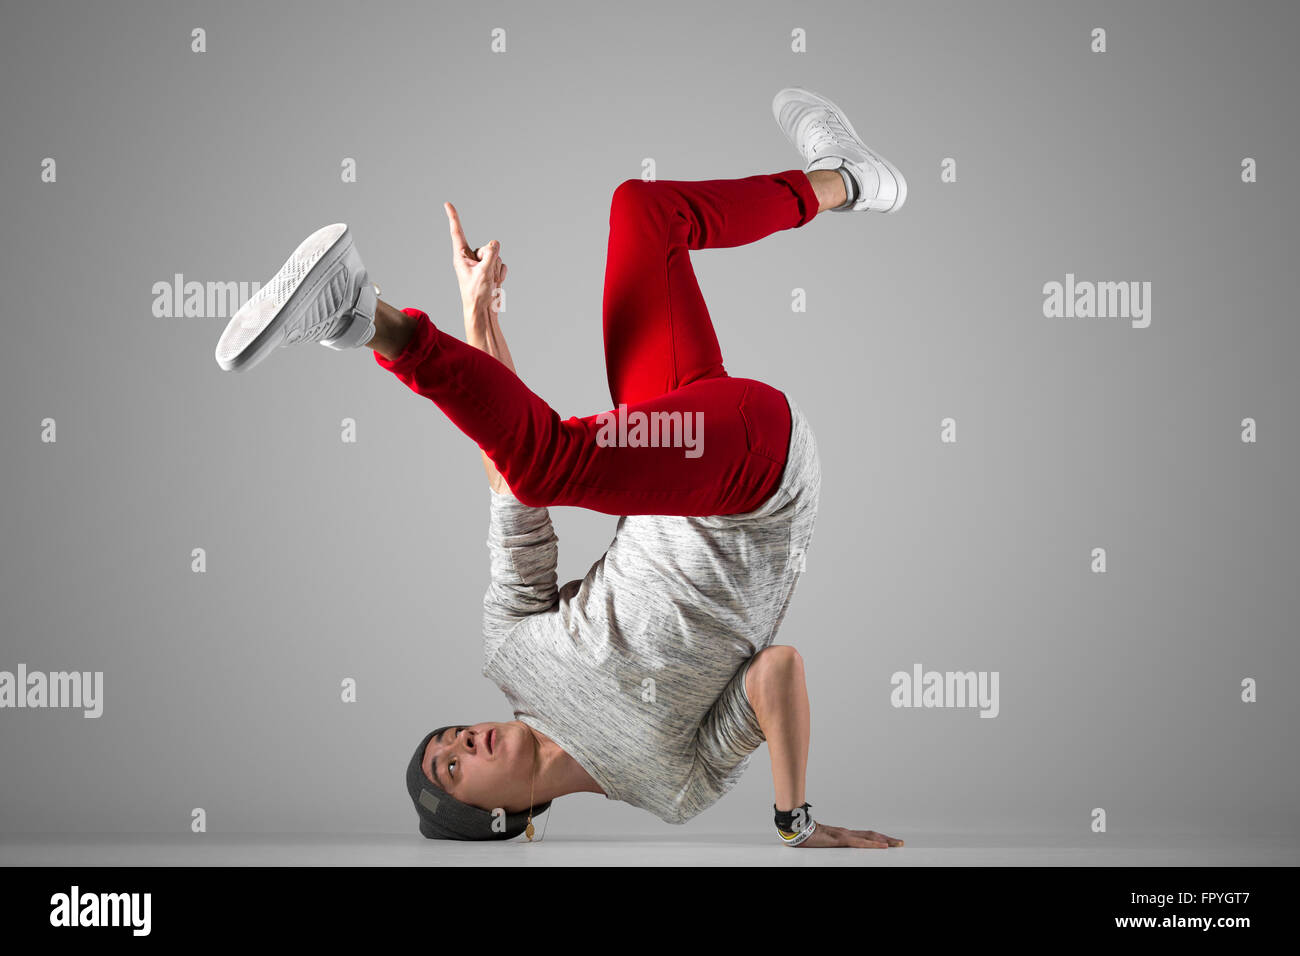 Montare un giovane uomo in rosso casual jeans, esecuzione di breakdance si muove sul pavimento. Lunghezza completa di foto su studio ba grigio Foto Stock